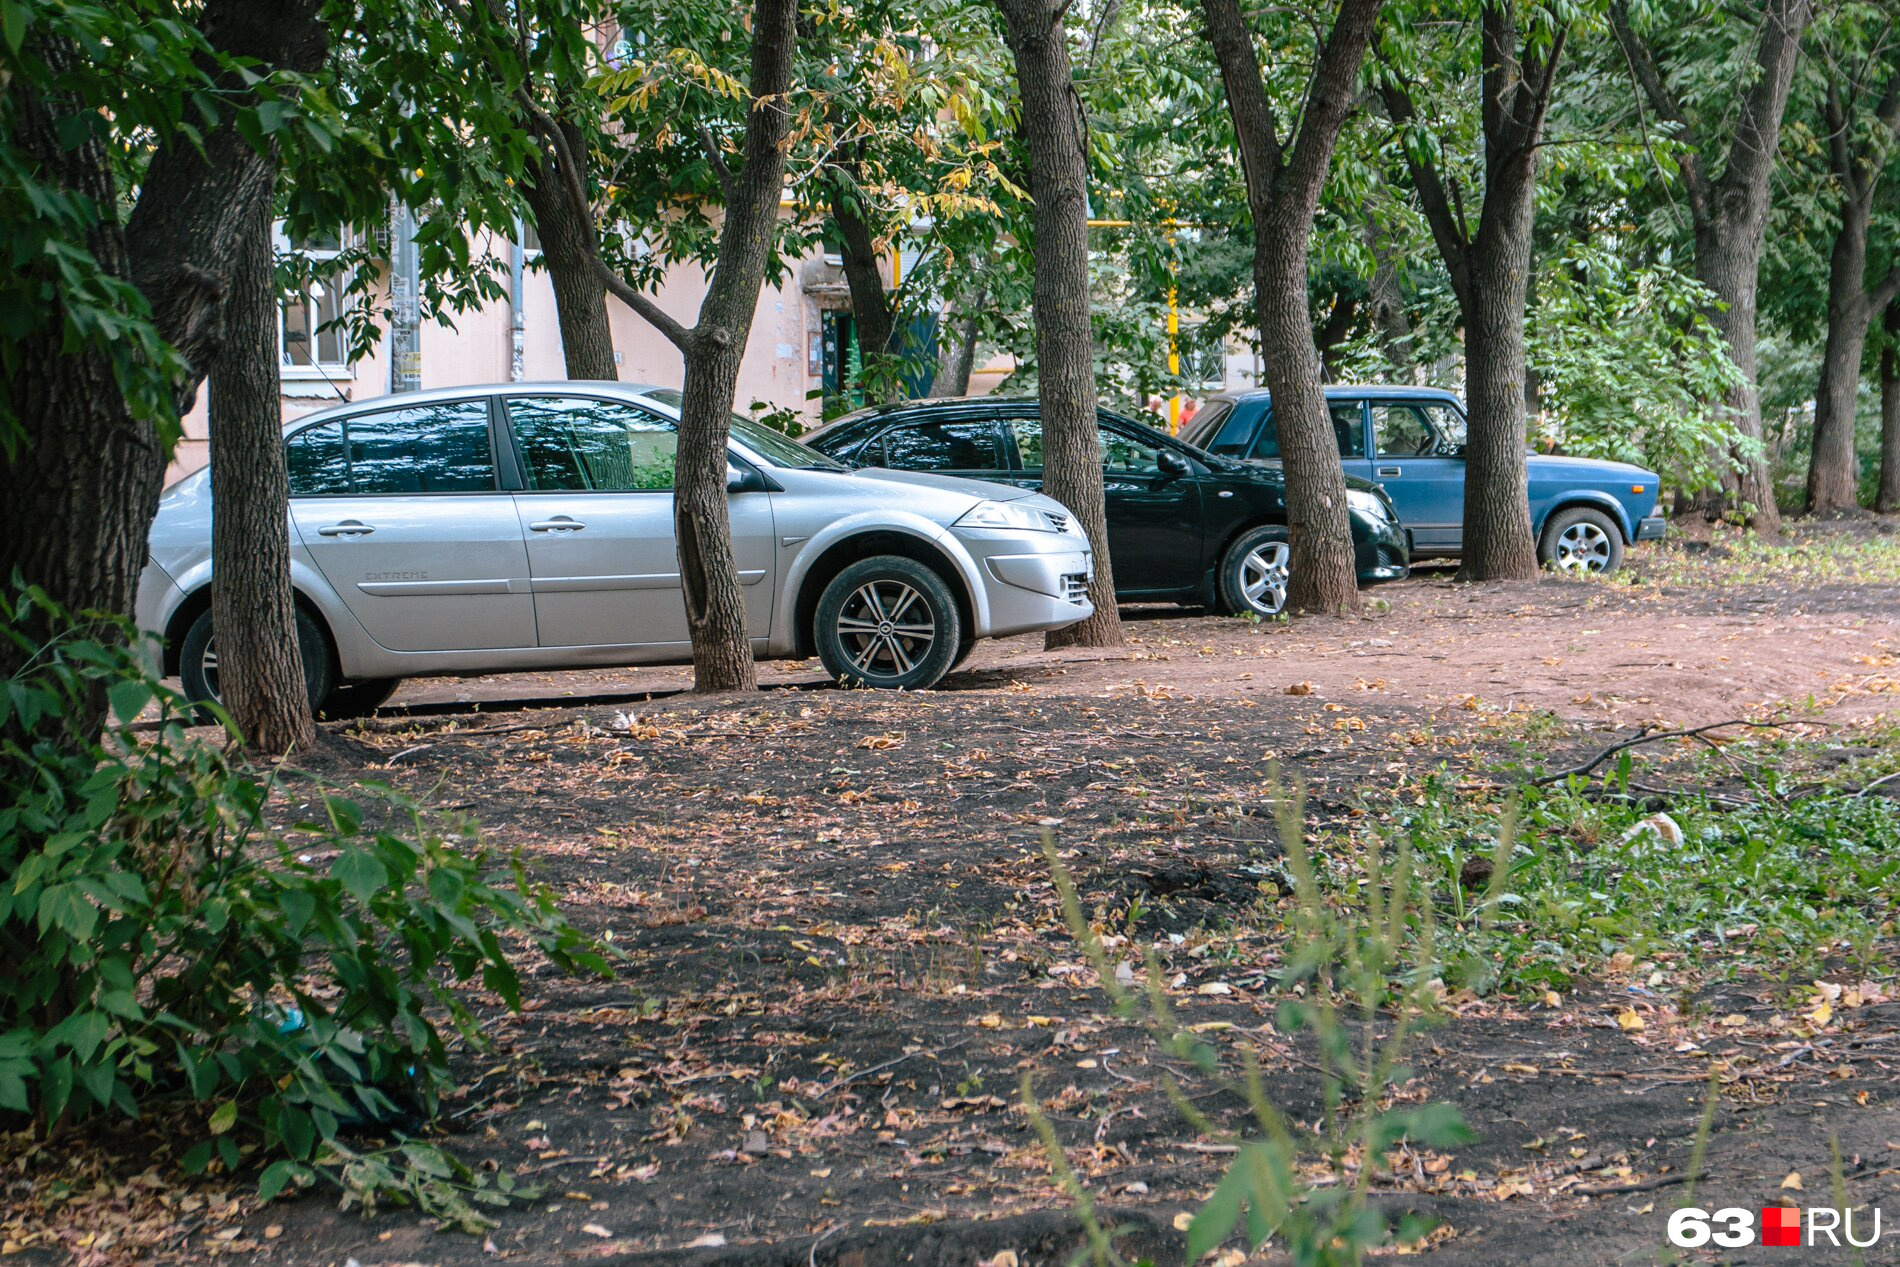 Зачастую автомобилисты ограждают места на газонах цепочками для парковки 